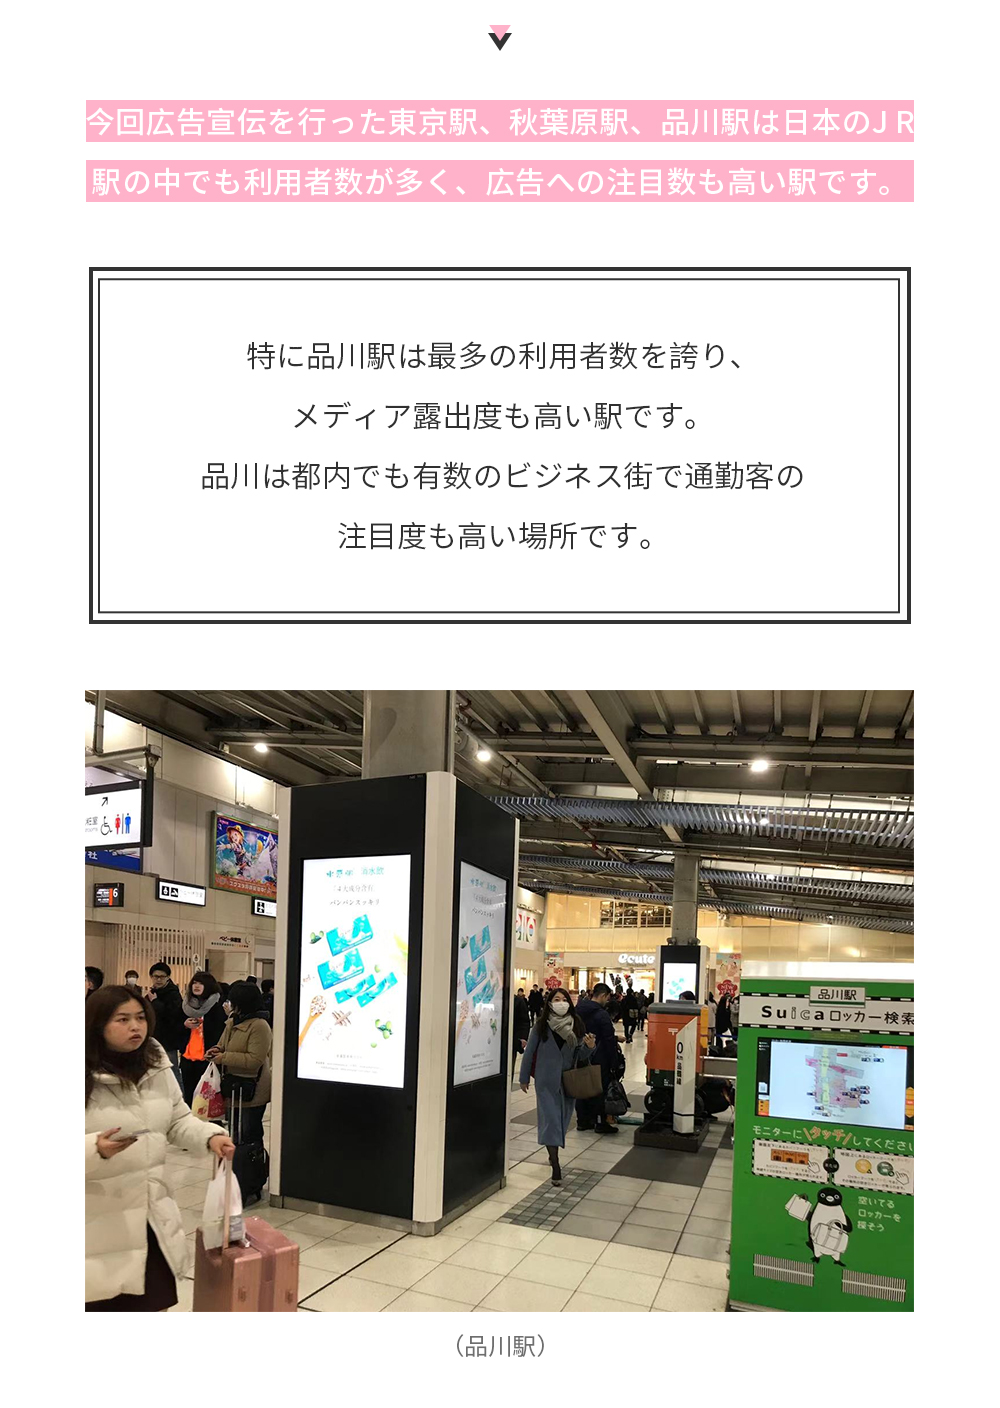 今回広告宣伝を行った東京駅、秋葉原駅、品川駅は日本のJ R駅の中でも利用者数が多く、広告への注目数も高い駅です。特に品川駅は最多の利用者数を誇り、メディア露出度も高い駅です。品川は都内でも有数のビジネス街で通勤客の注目度も高い場所です。